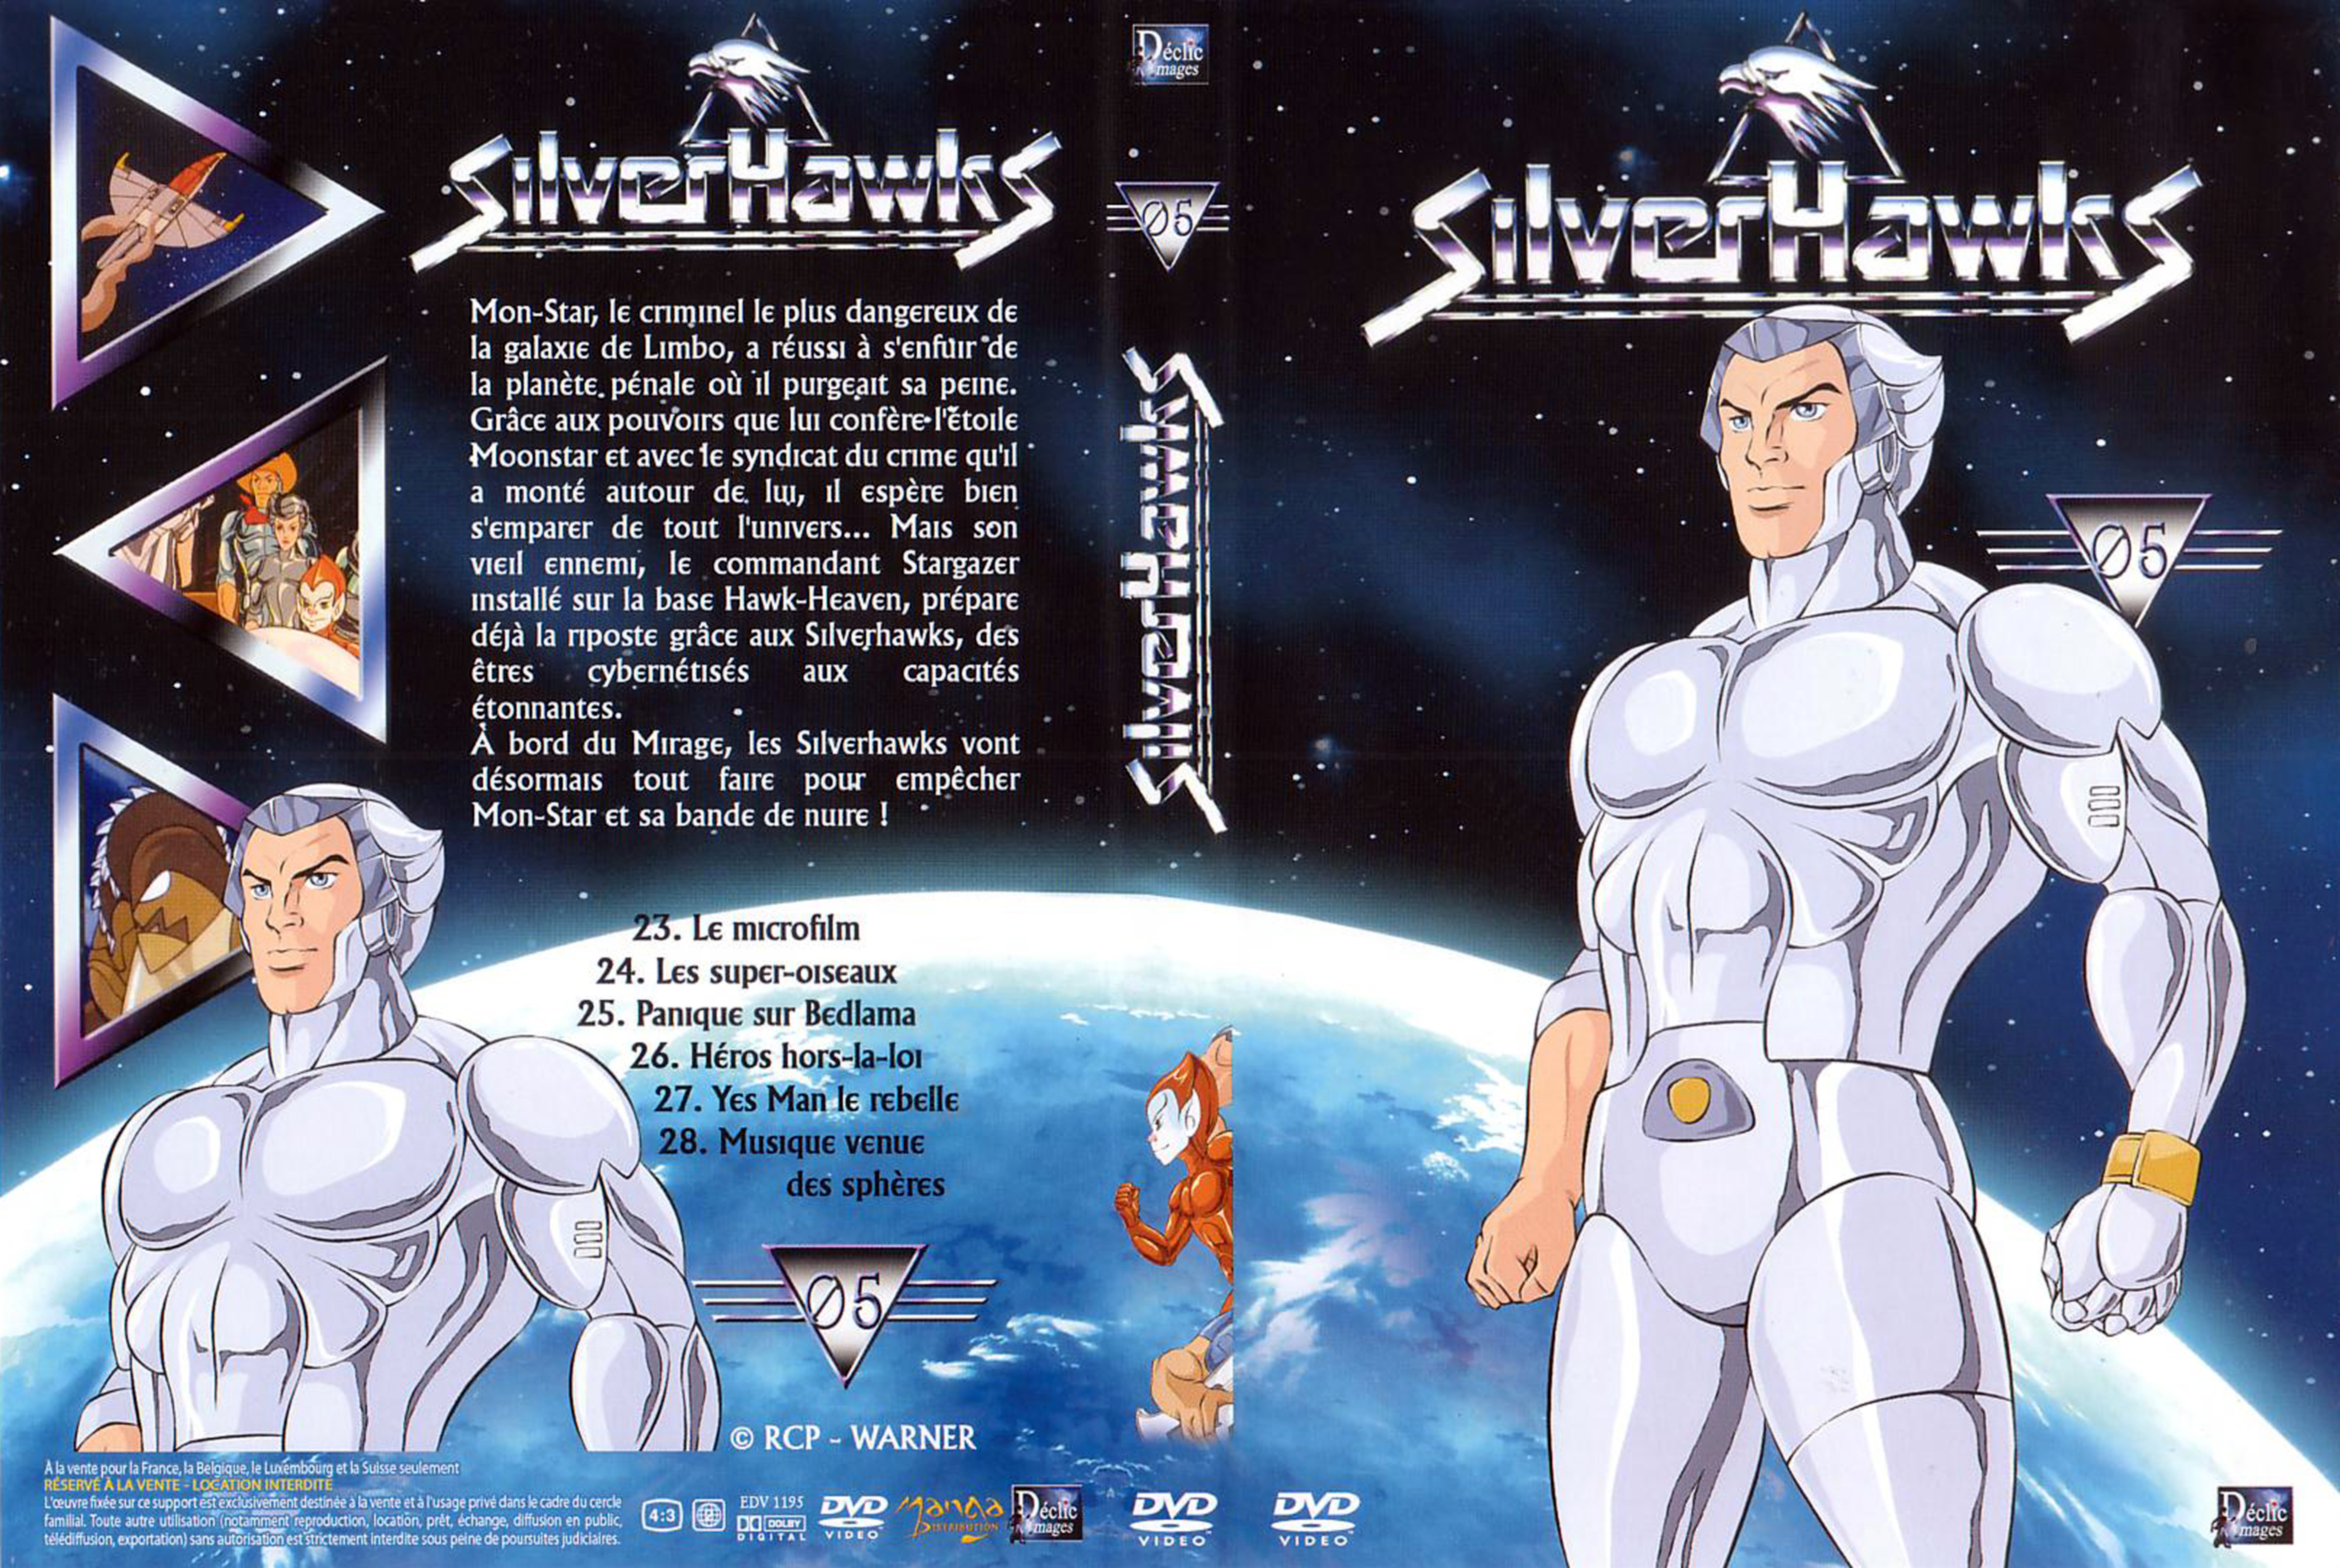 Jaquette DVD Silverhawks DVD 05